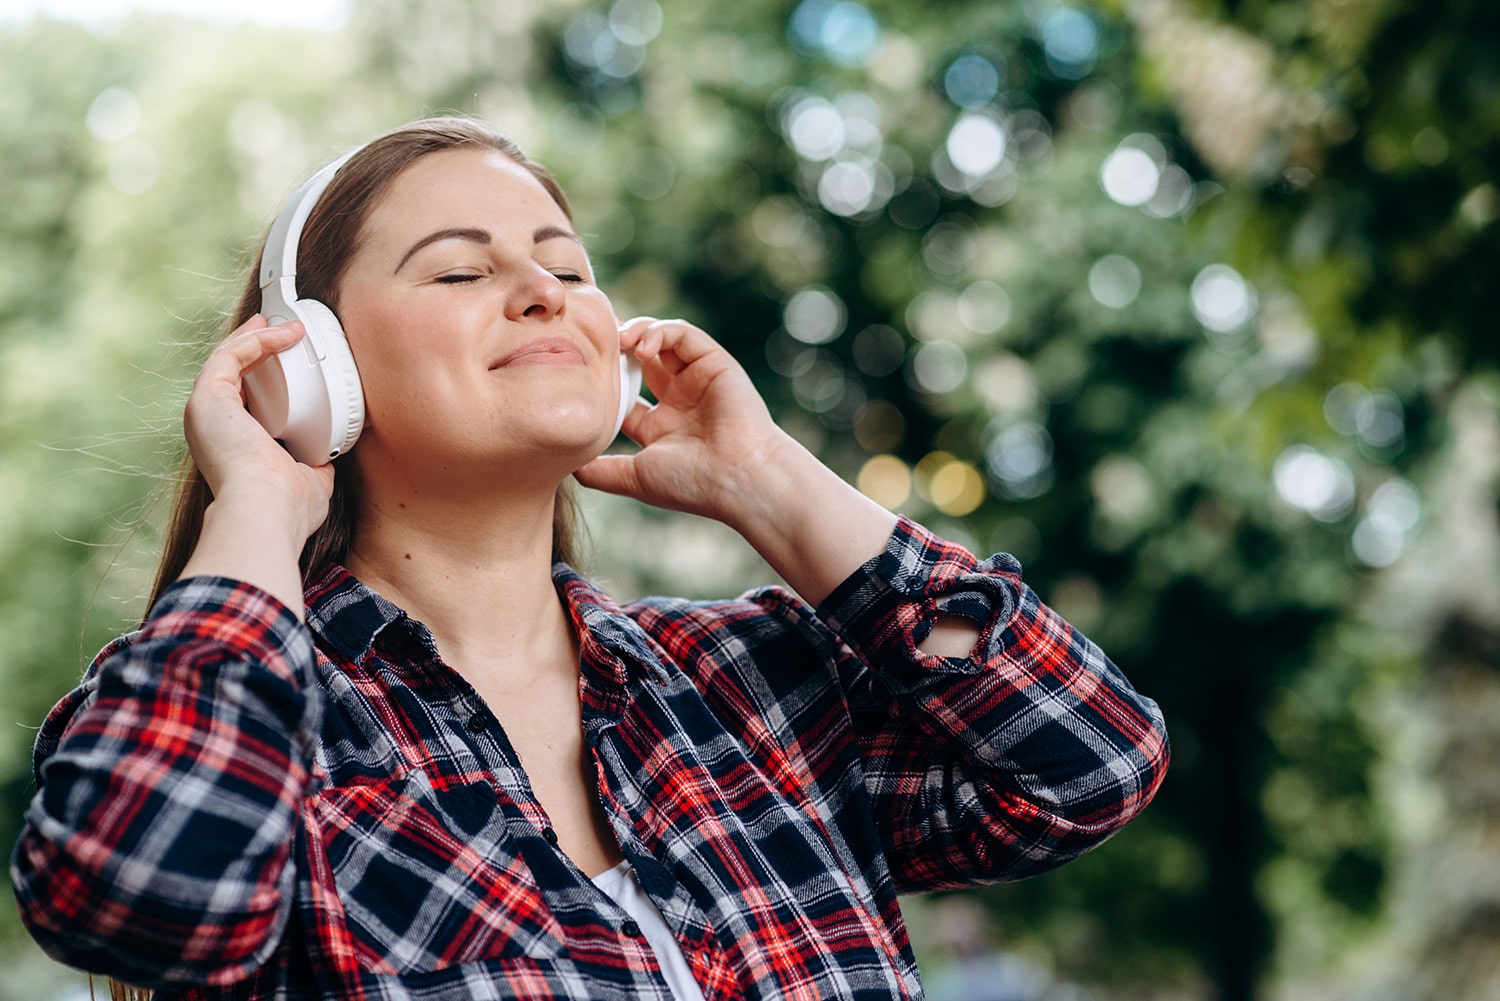 Nöjd kvinna som njuter av musik i en park. Tarmbakterierna och deras signalsubstanser har ett nära samarbete som påverkar hela din hälsa. När allt är i balans ger det harmoni till magen.